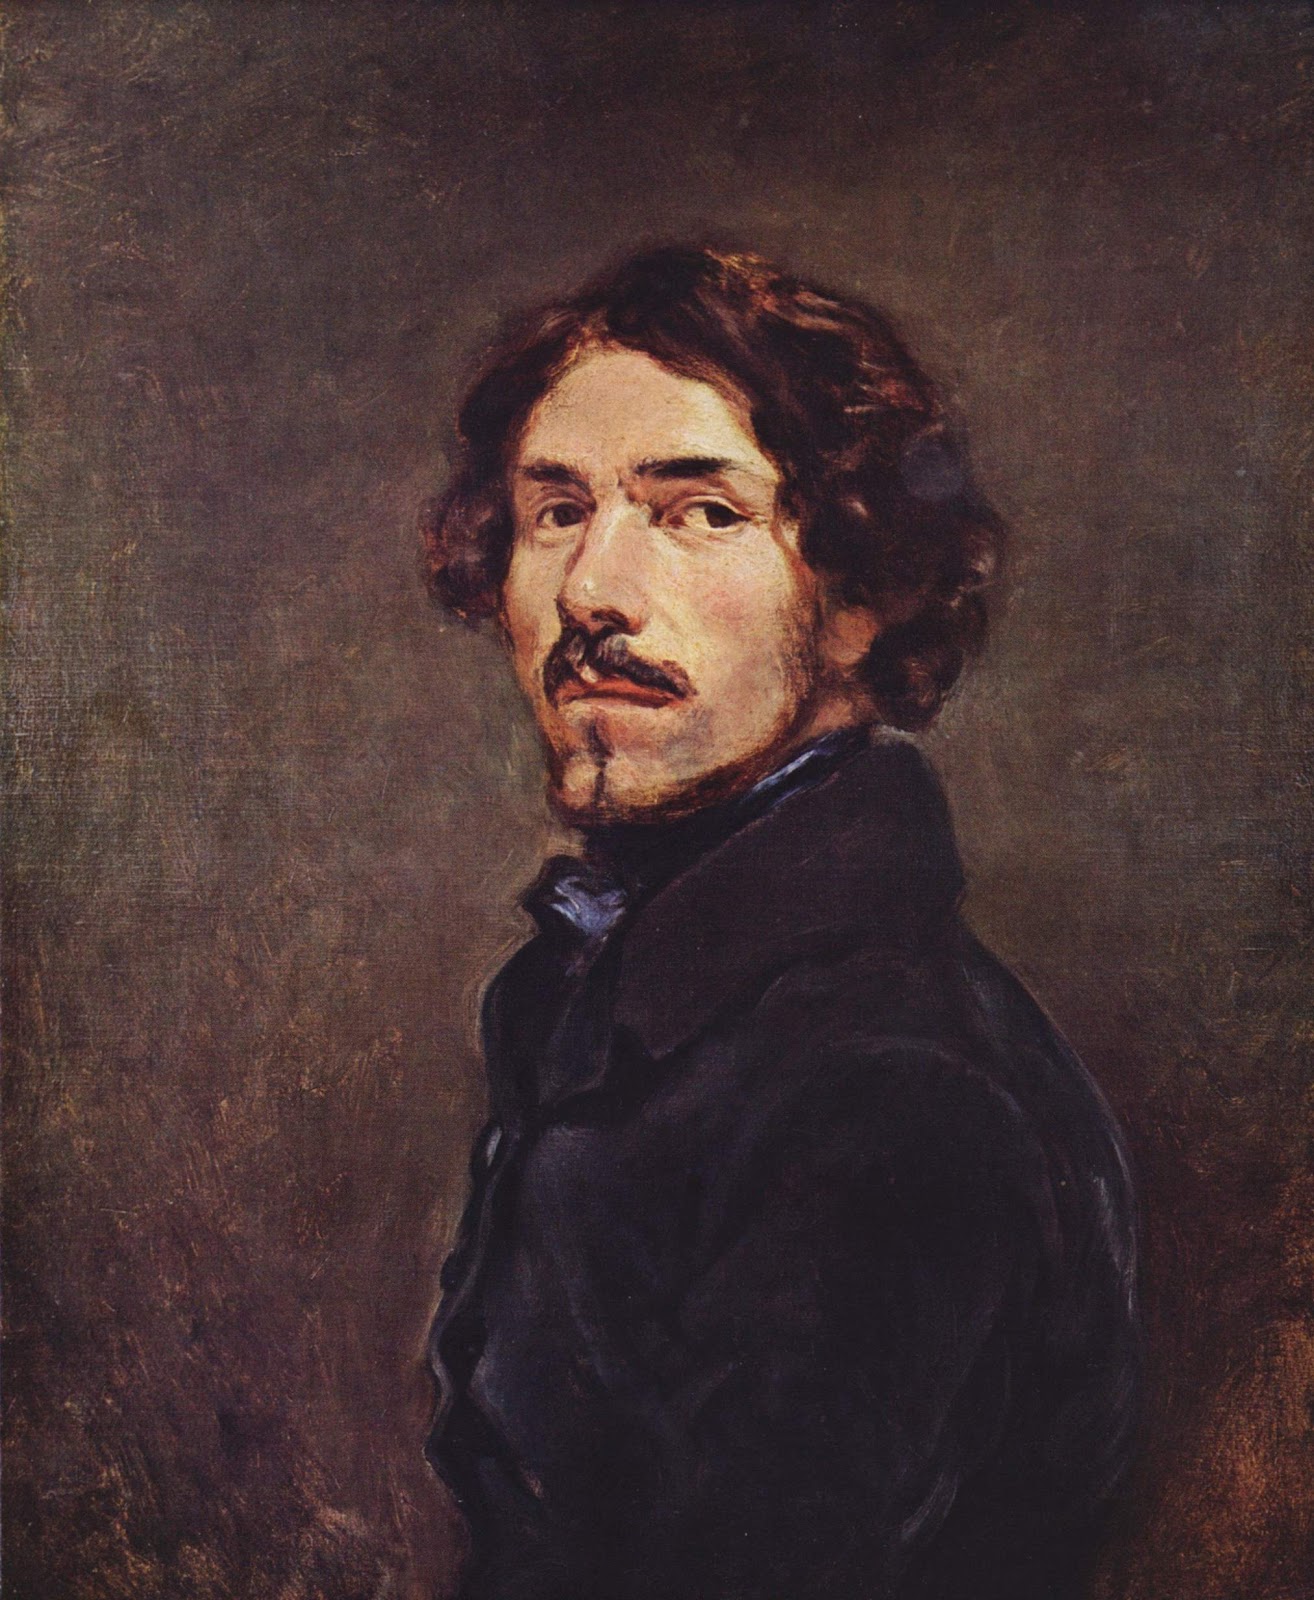 Eugene+Delacroix-1798-1863 (273).jpg